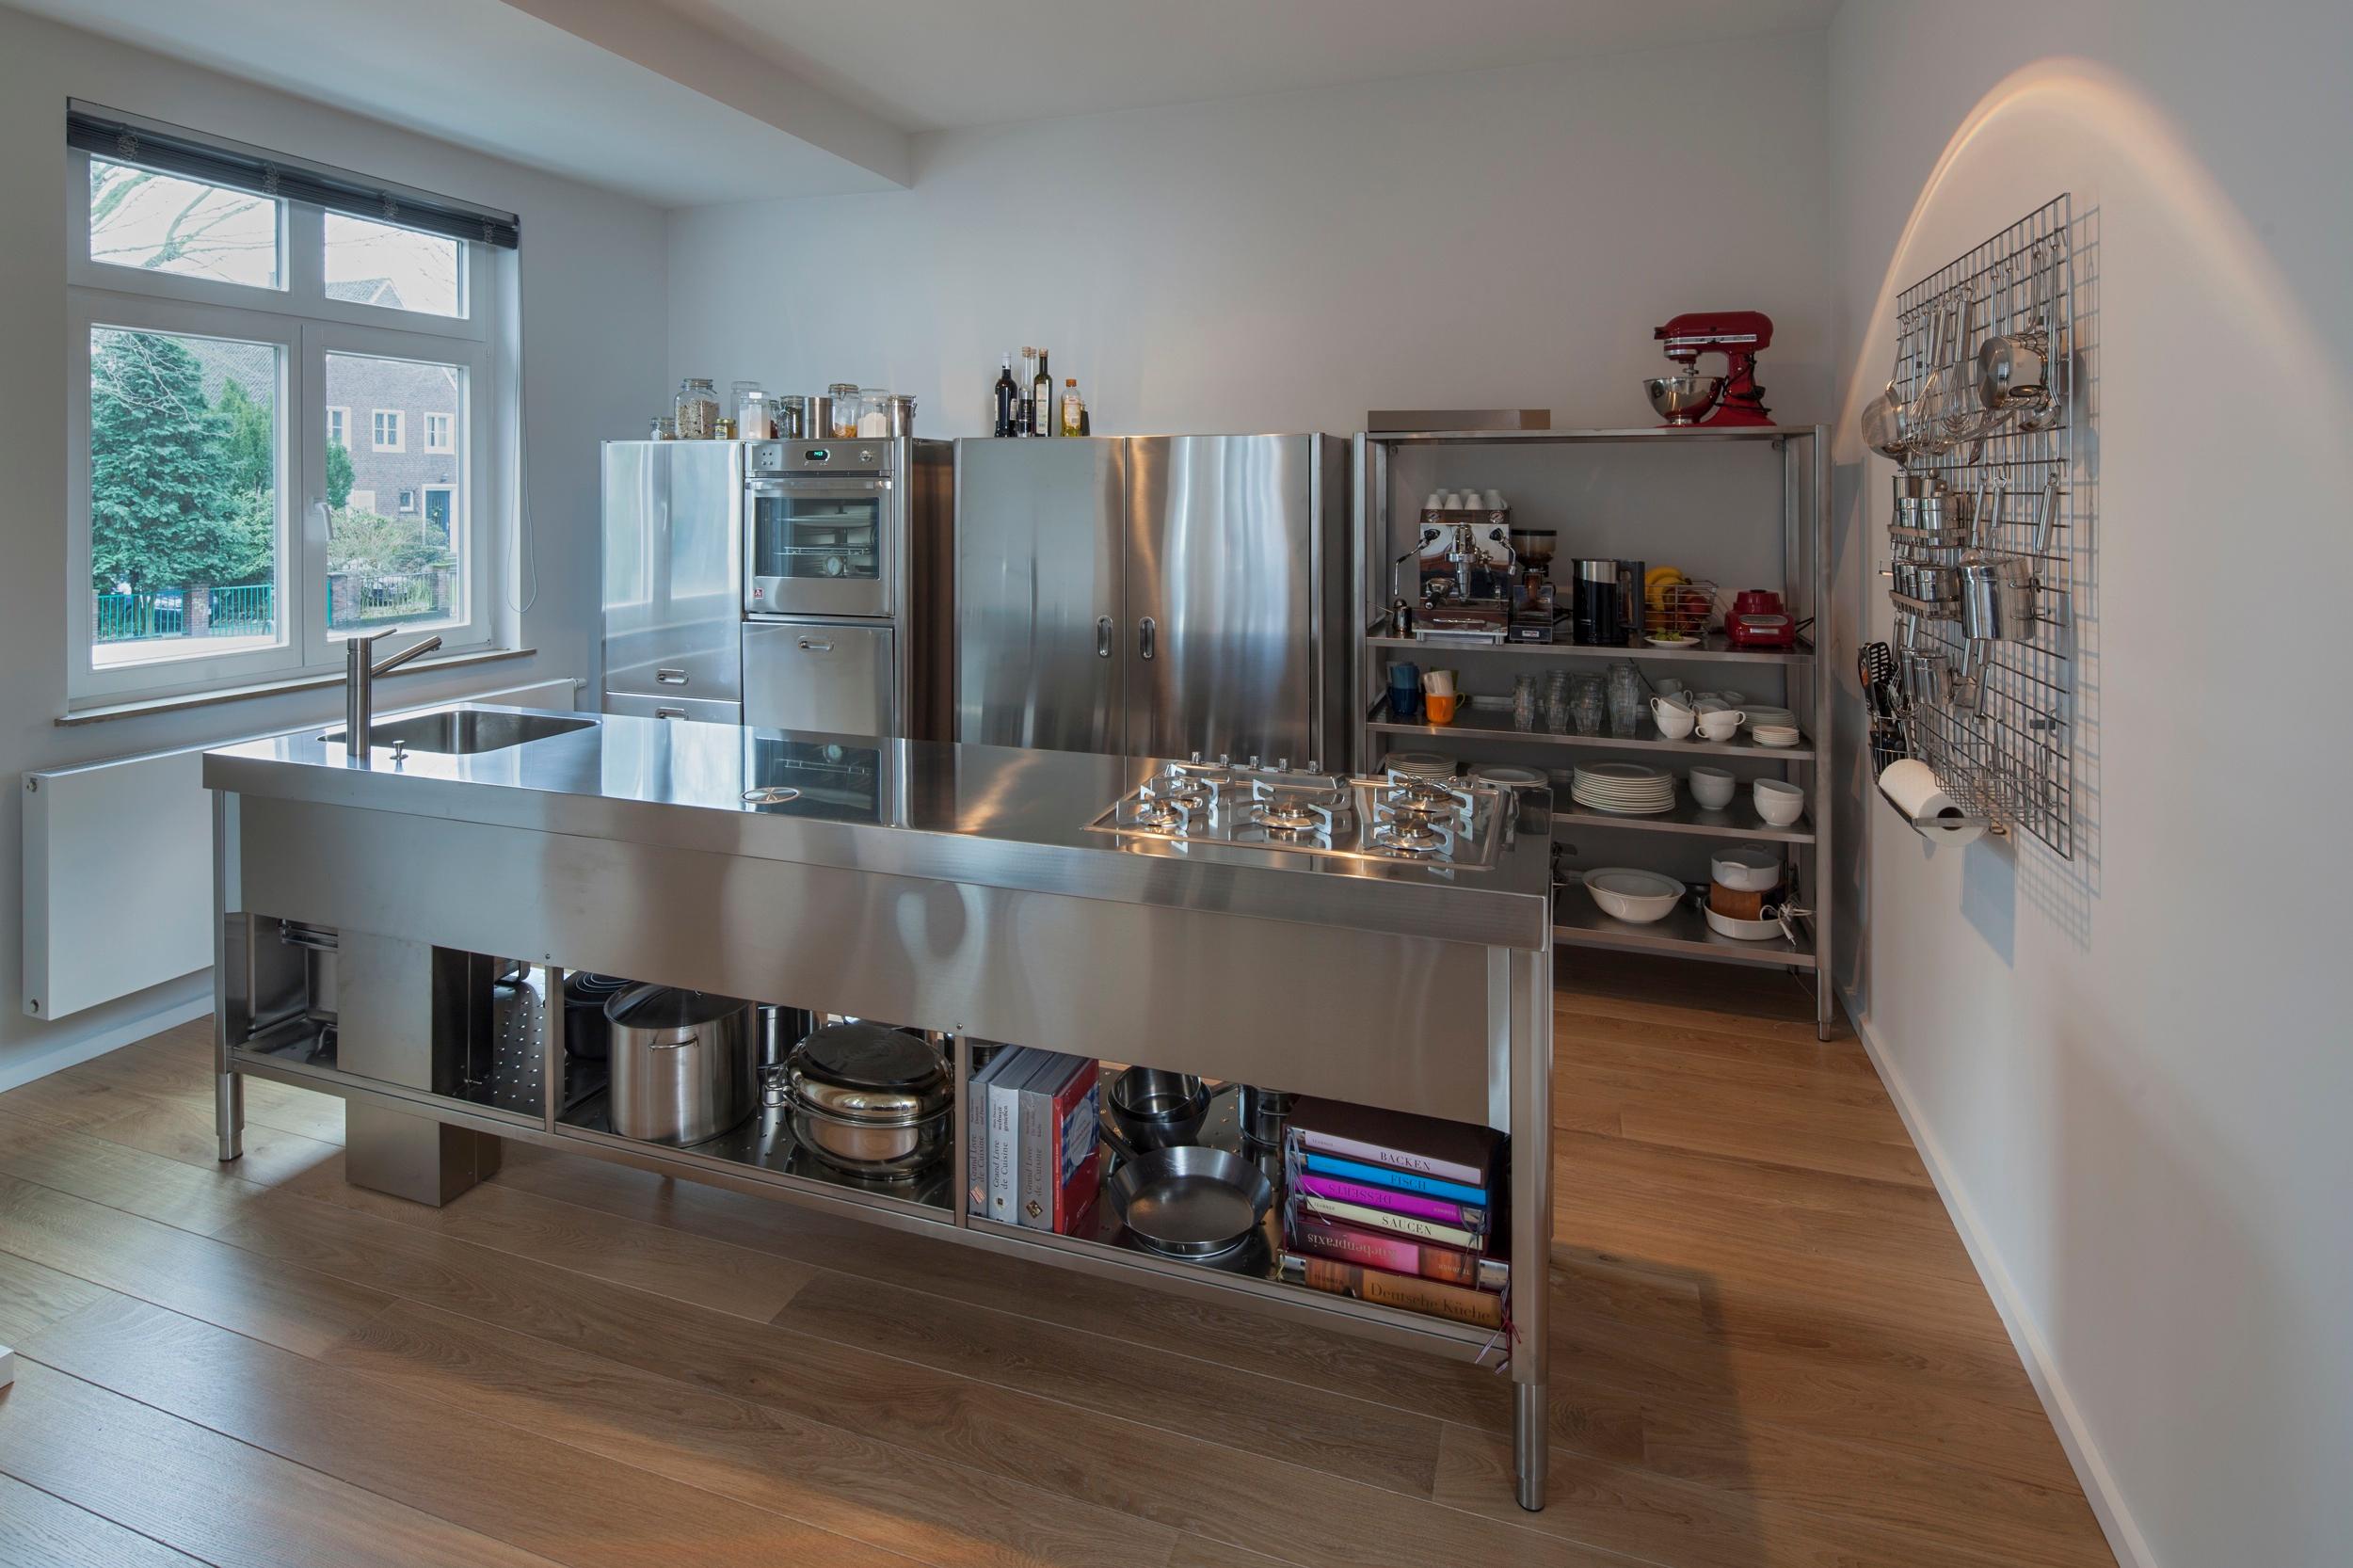 In Edelstahl kochen #küche #küchenregal #edelstahlküchenzeile #edelstahlküche ©POPO GmbH